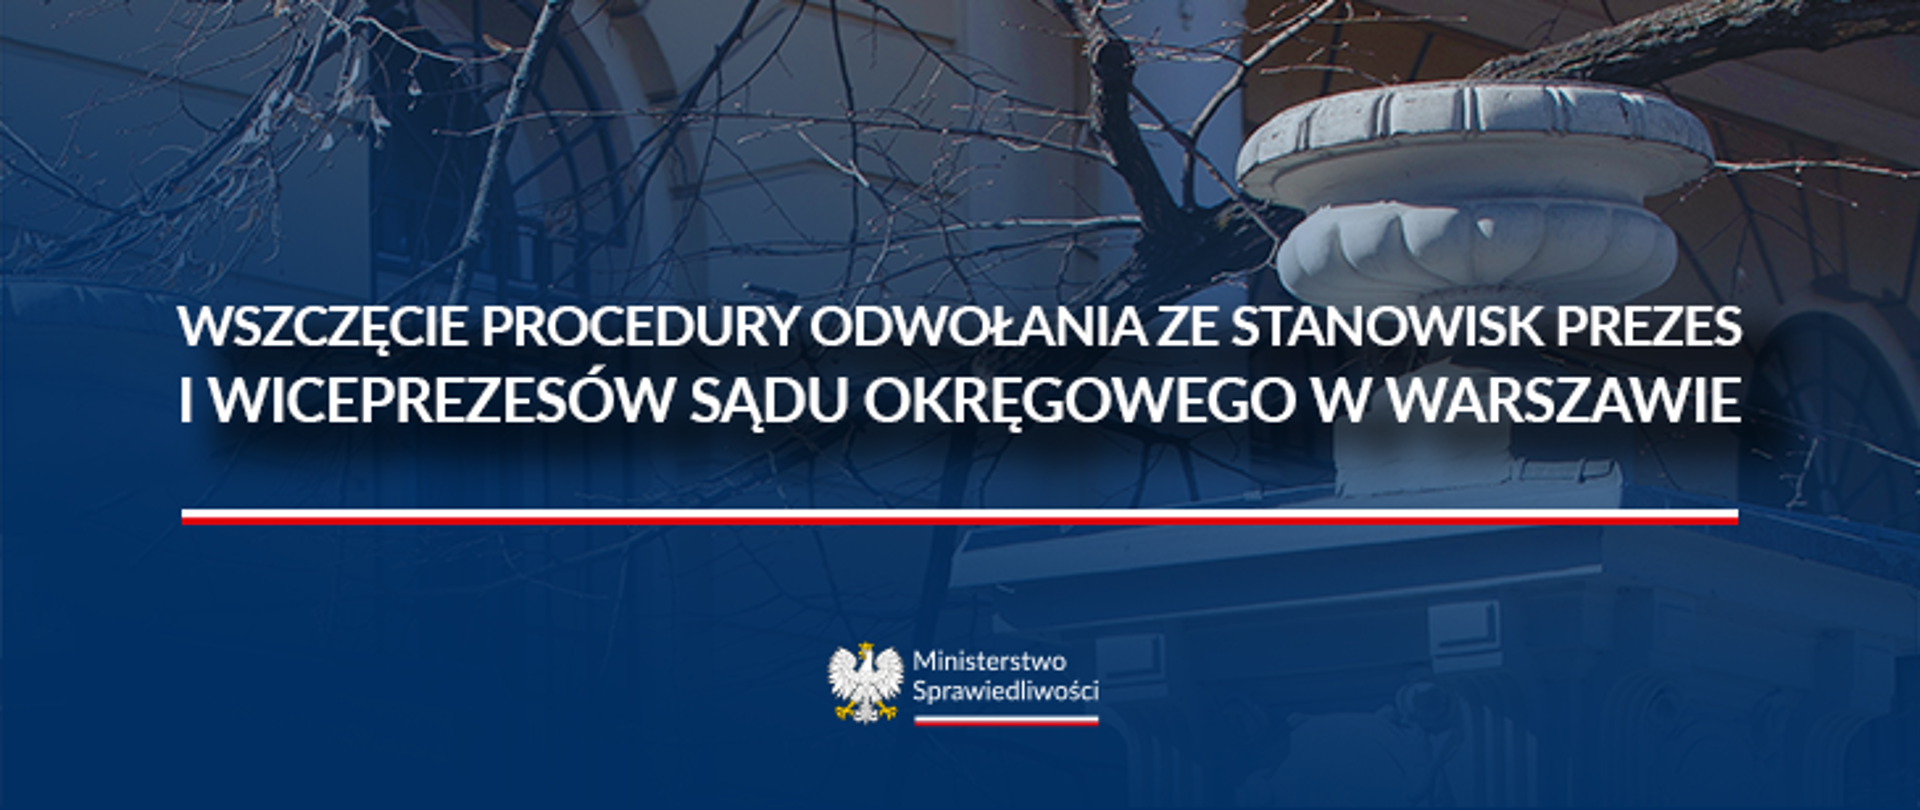 Wszczęcie procedury odwołania Warszawa